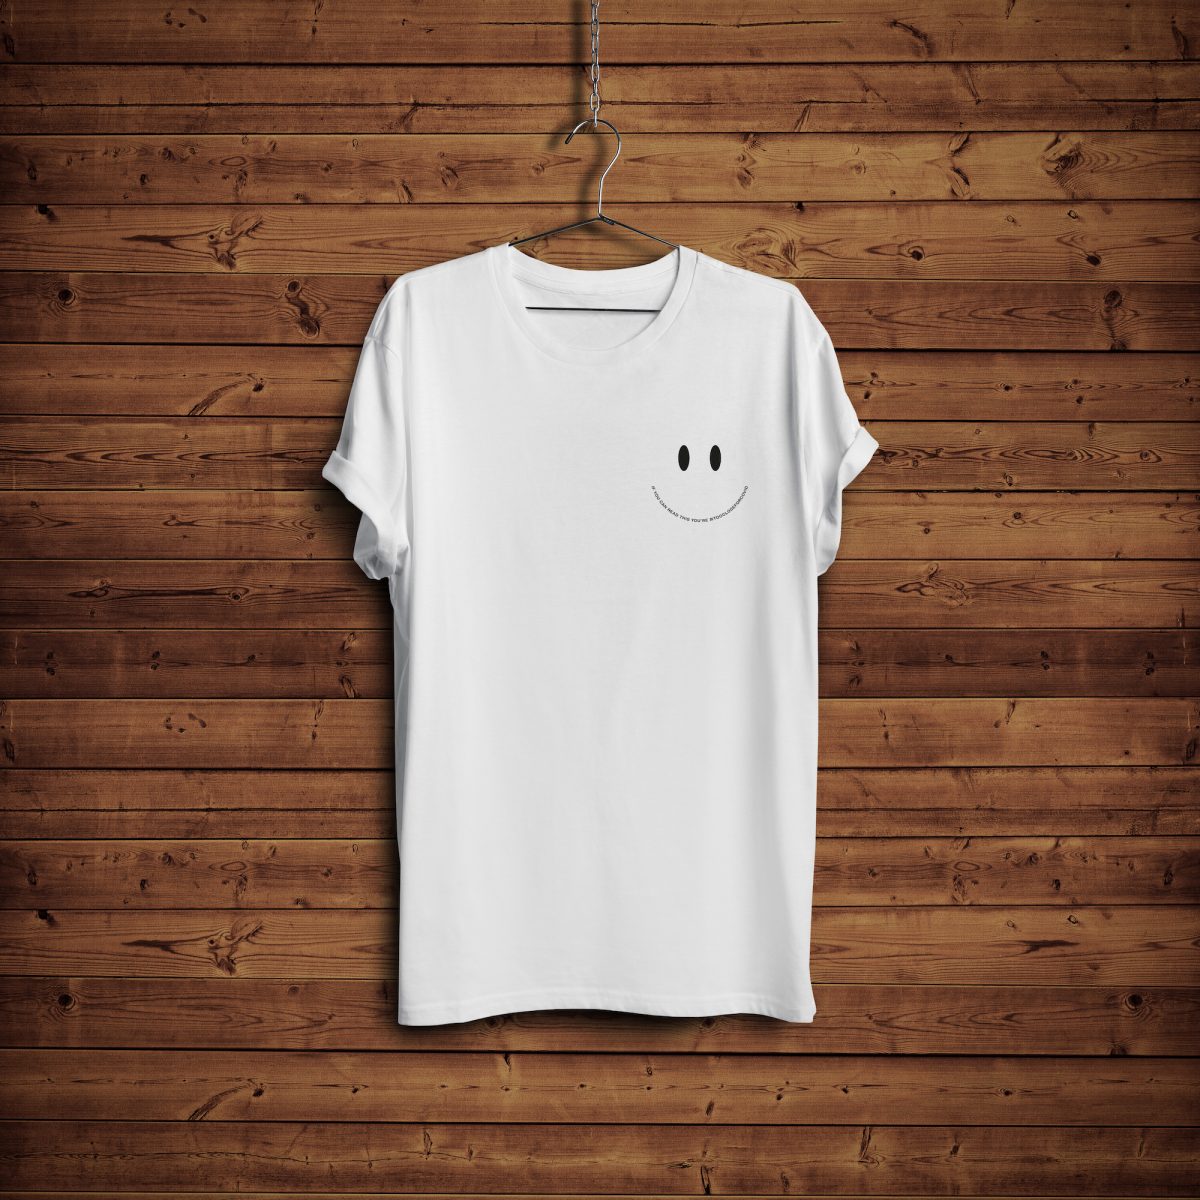 Design 2 – T-shirt